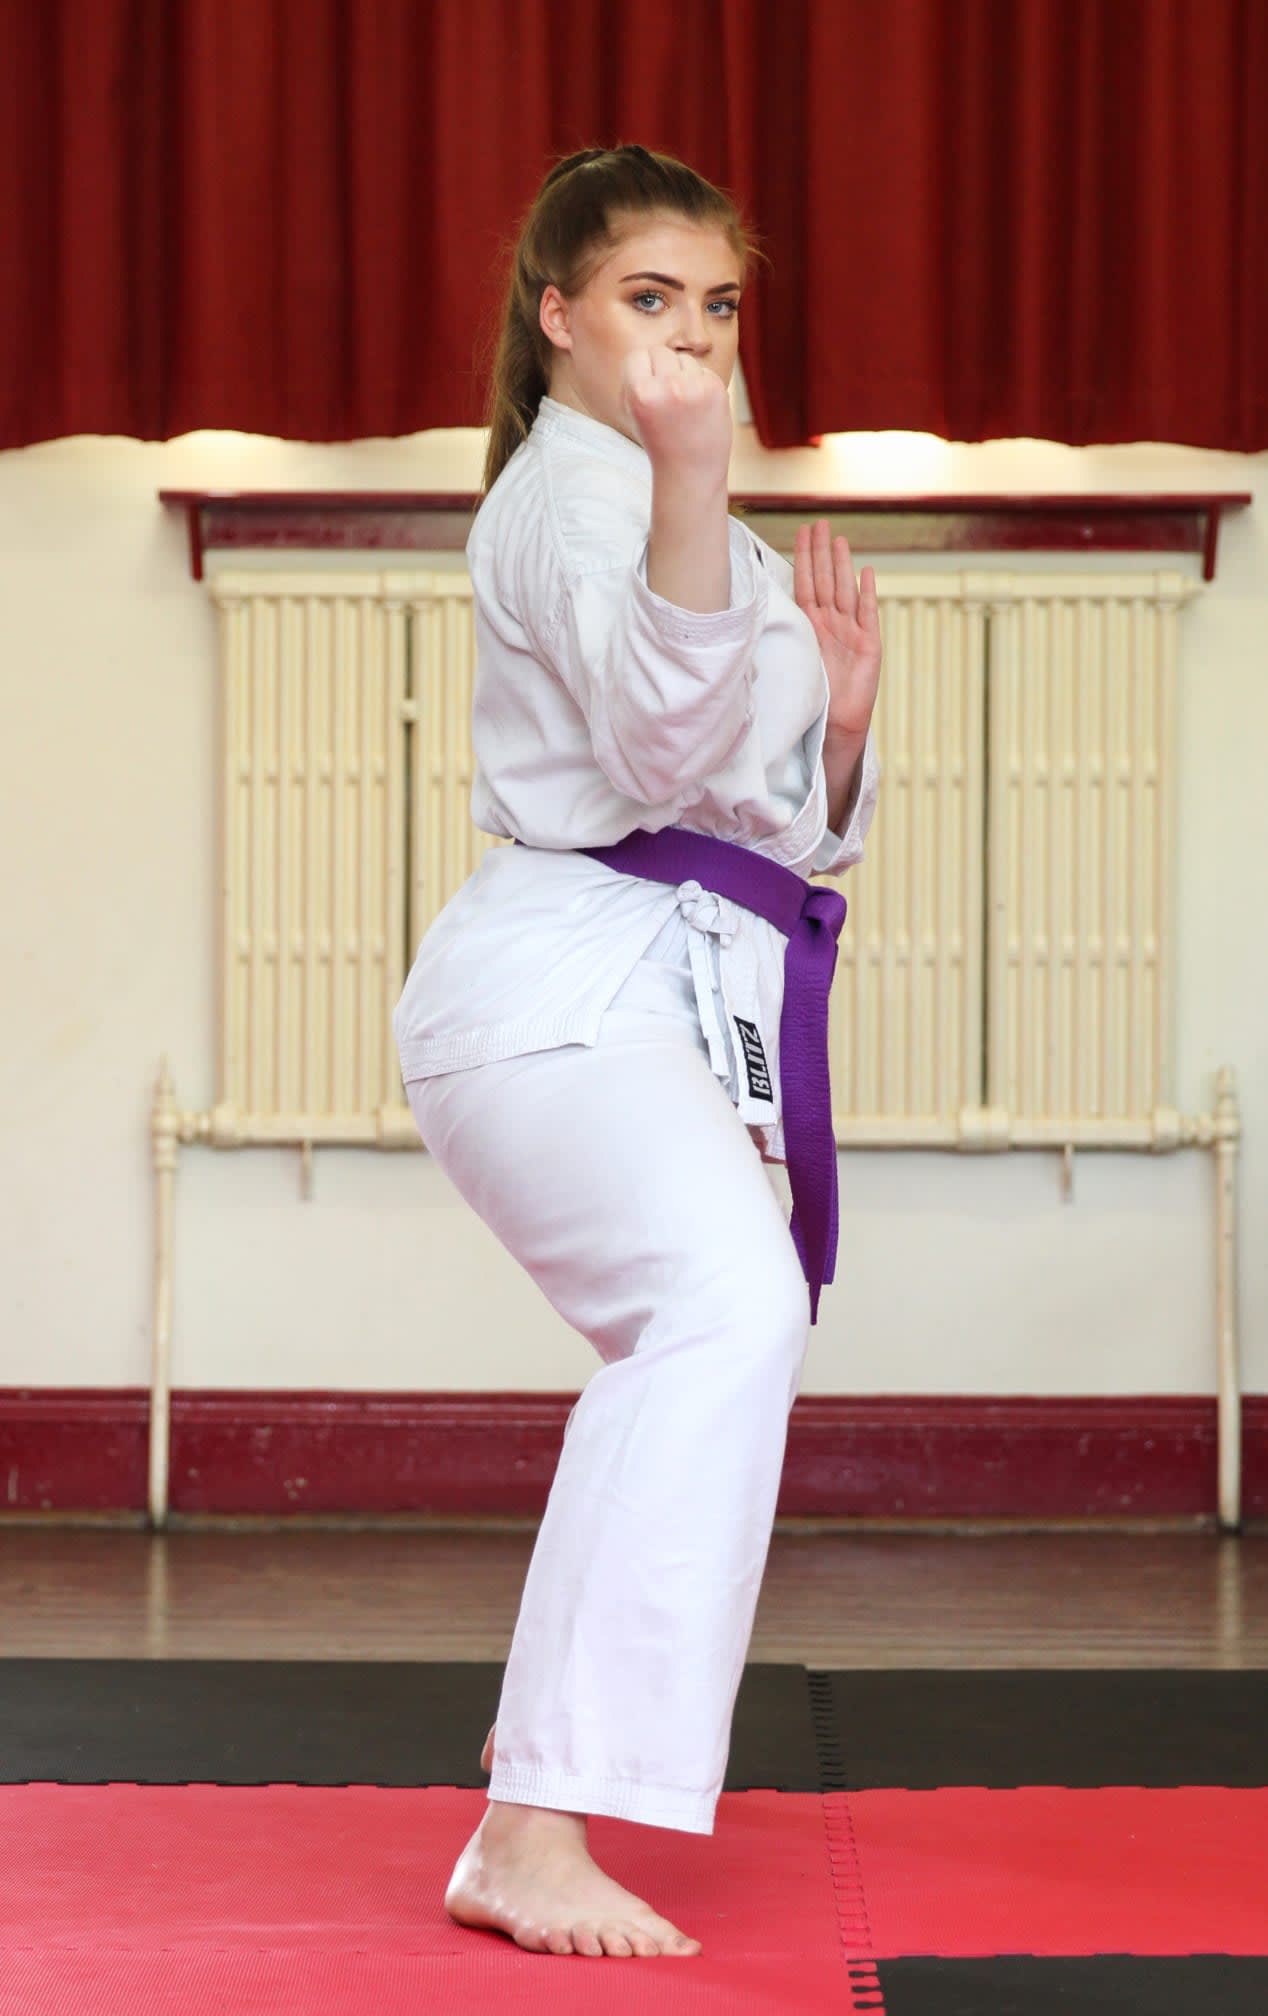 Images Senshi Ryu Martial Arts